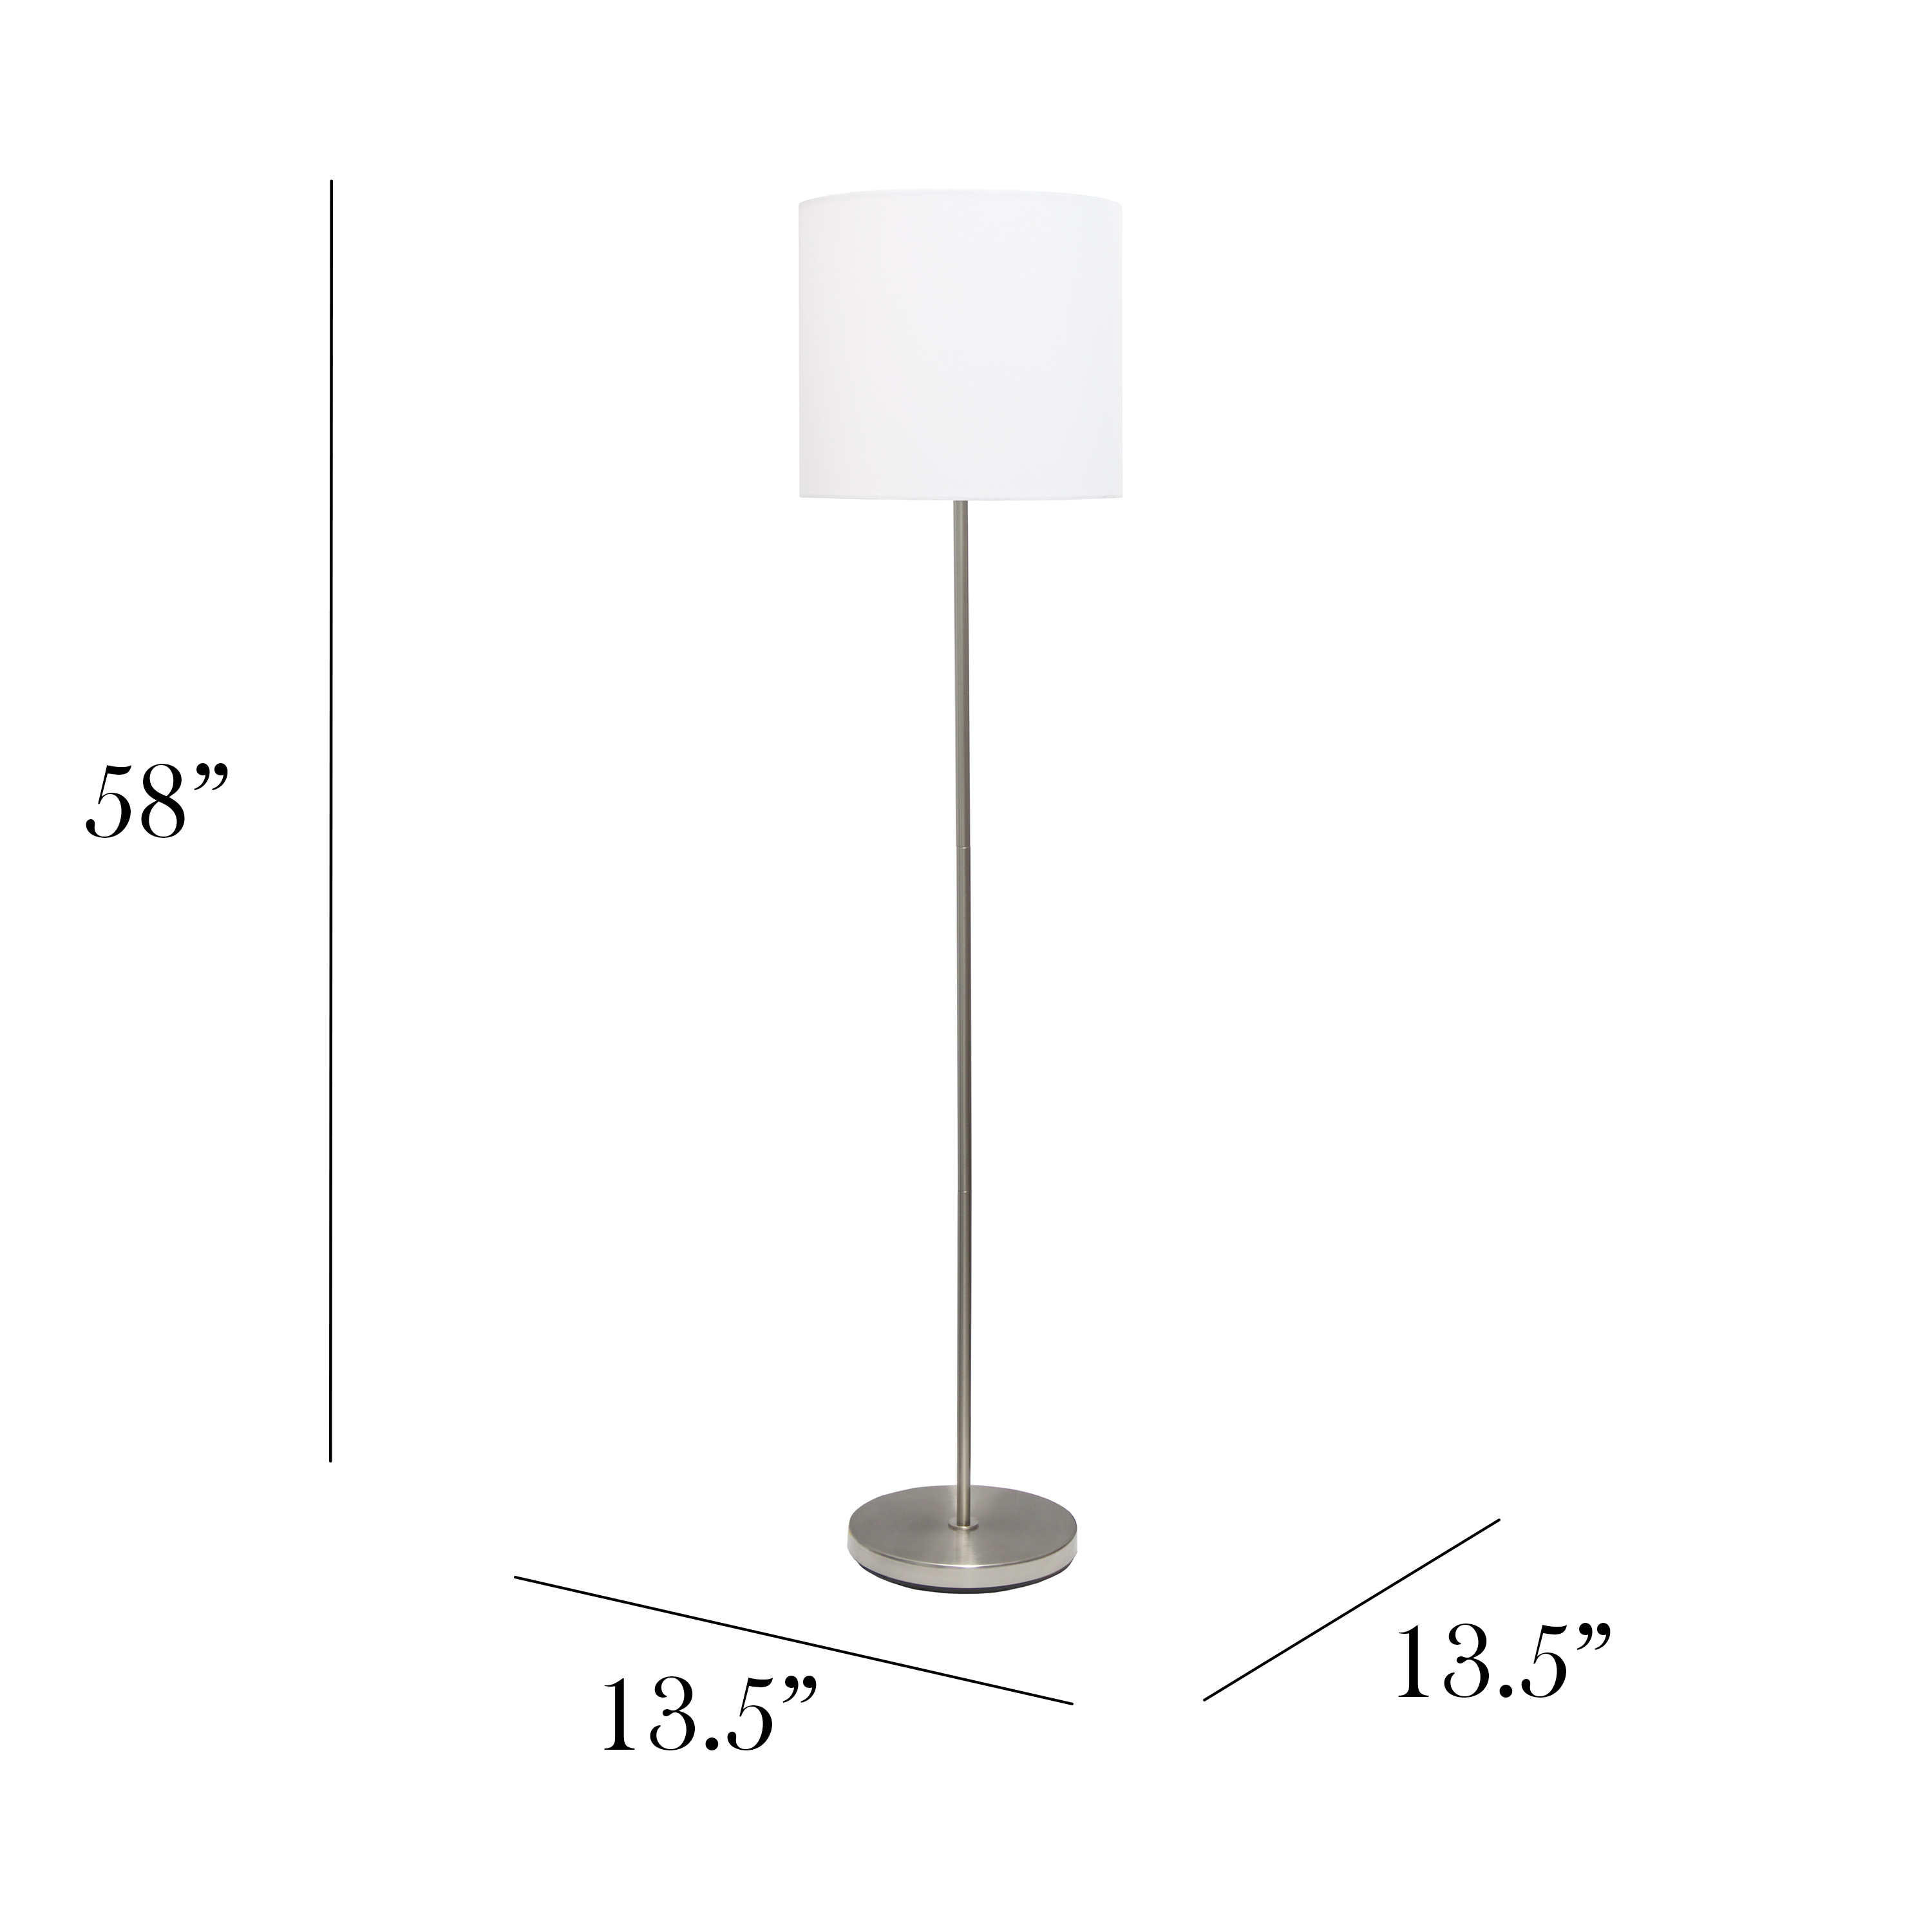 Simple Designs Brushed Nickel Drum Shade Floor Lamp, White - image 5 of 9